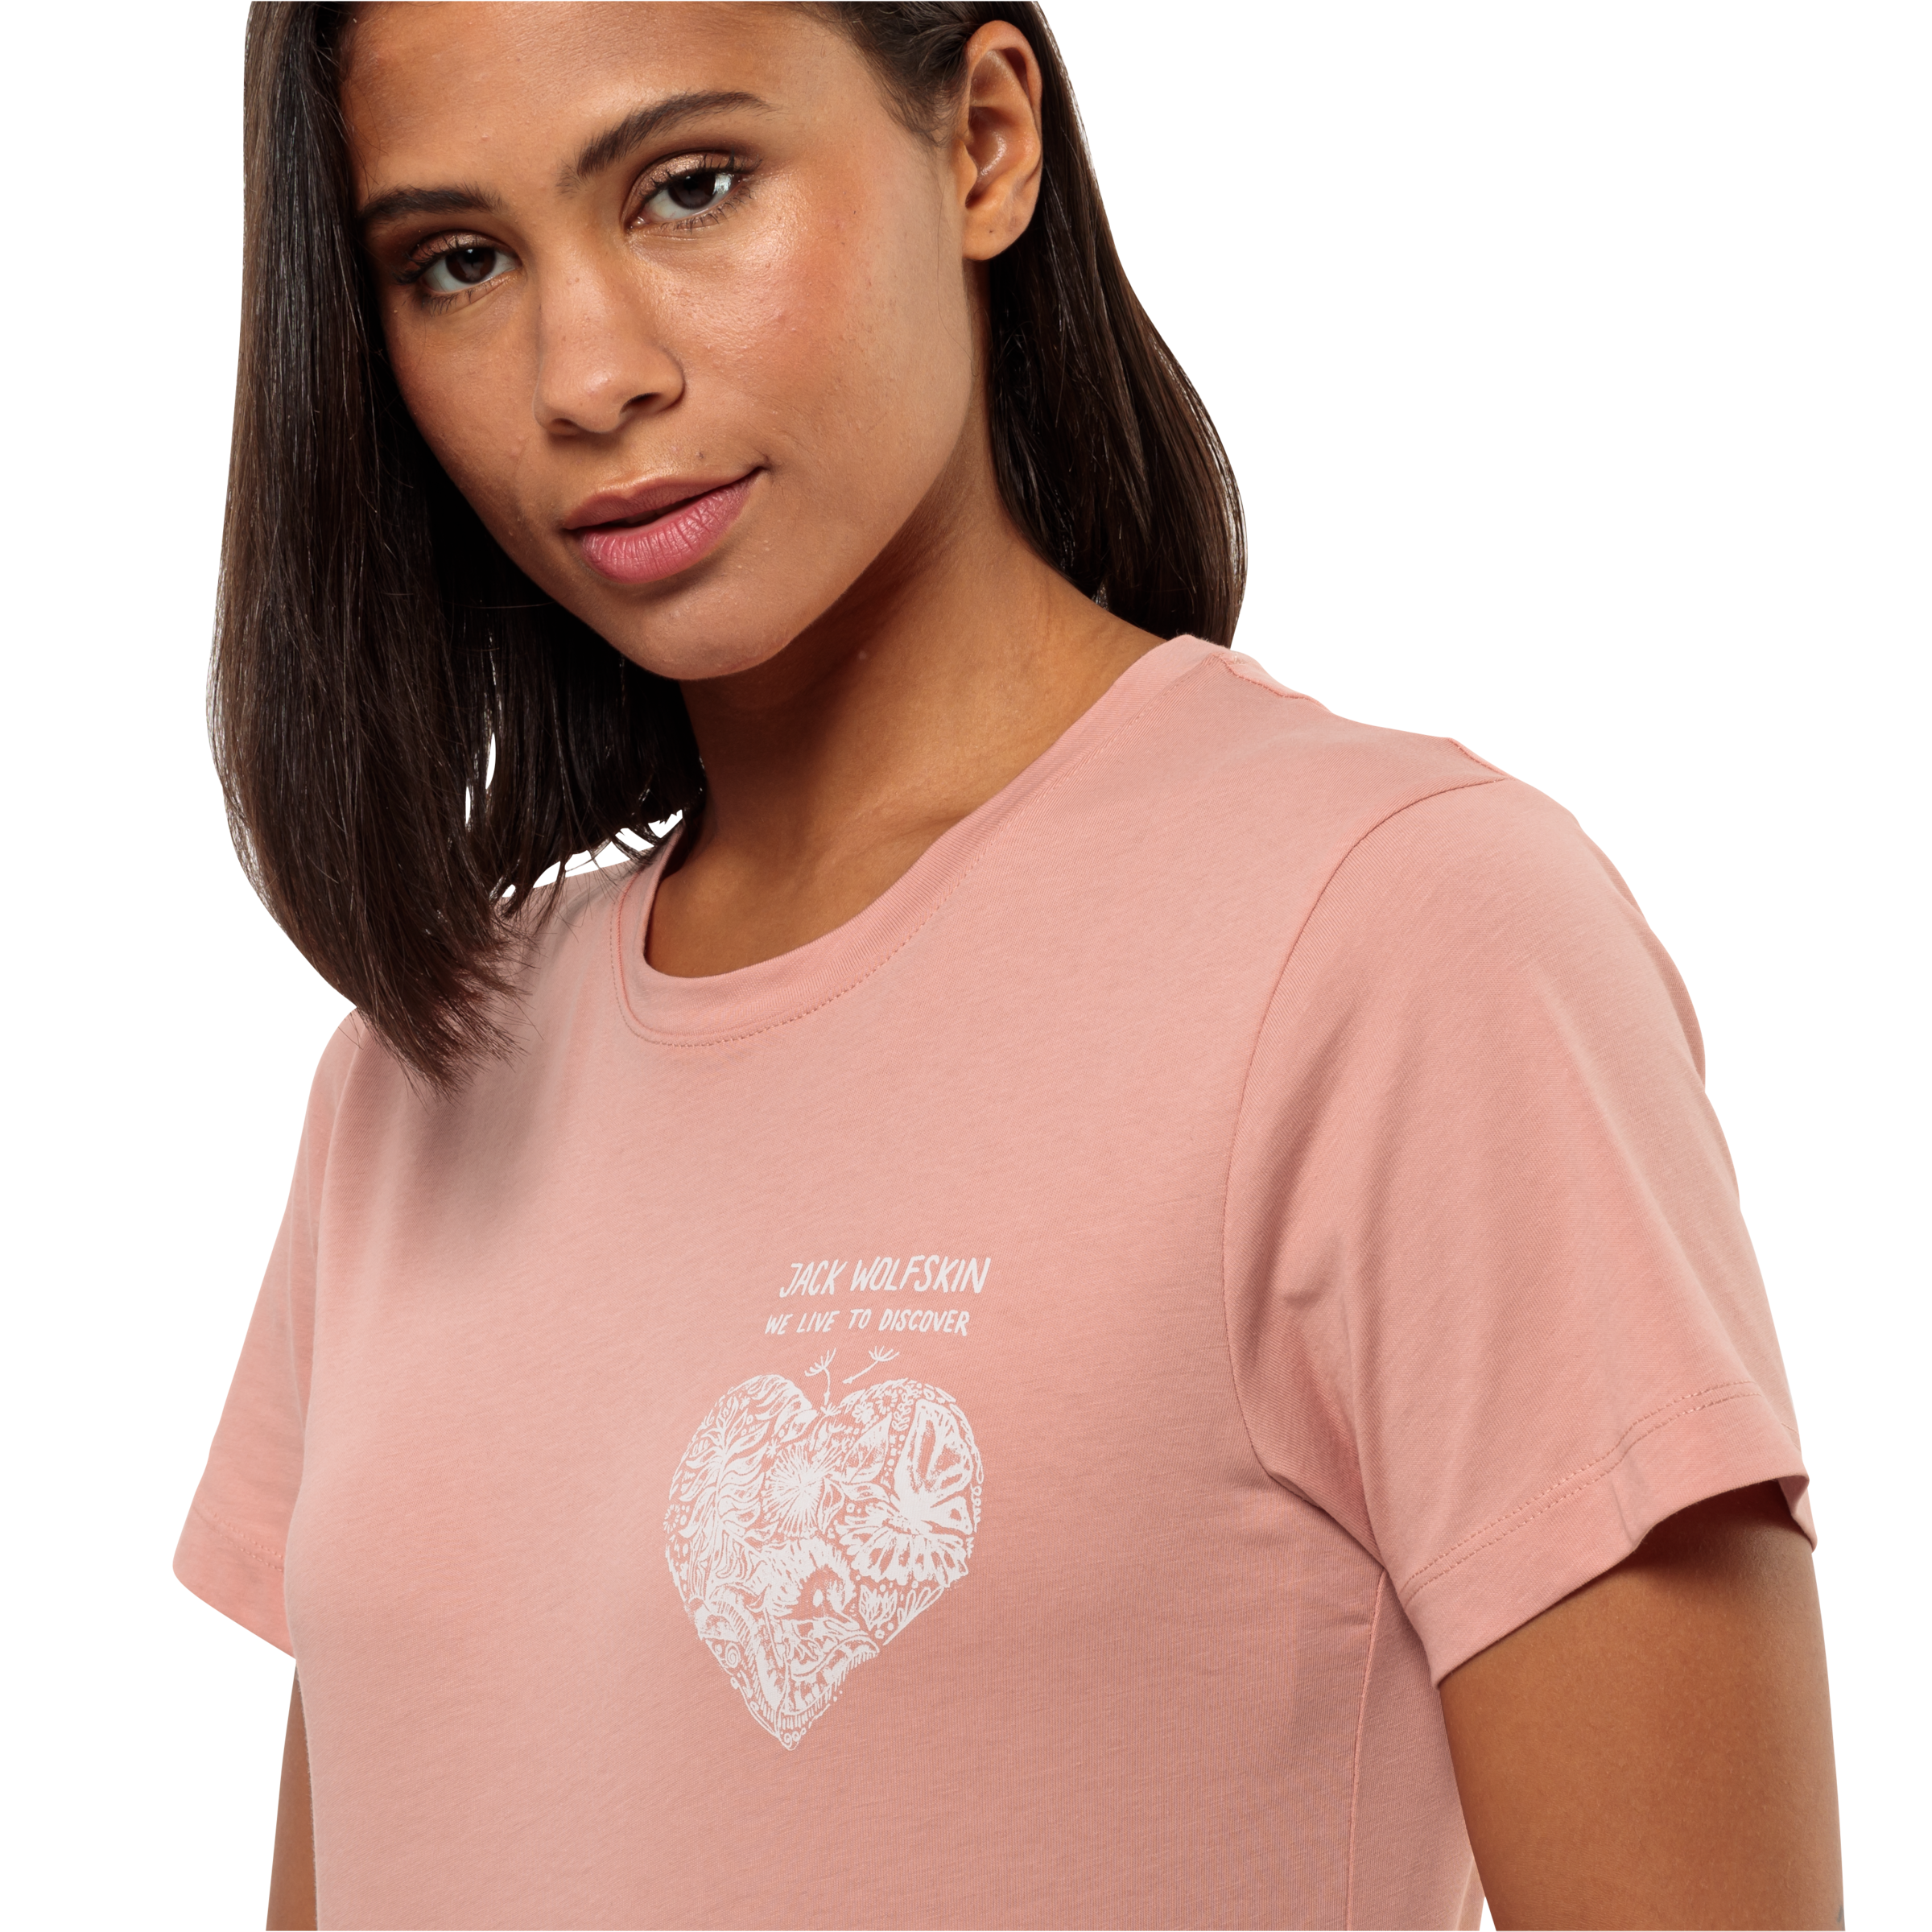 Jack Wolfskin T-Shirt »DISCOVER HEART T W«, klassisches Grafik-T-Shirt aus weicher Bio-Baumwolle